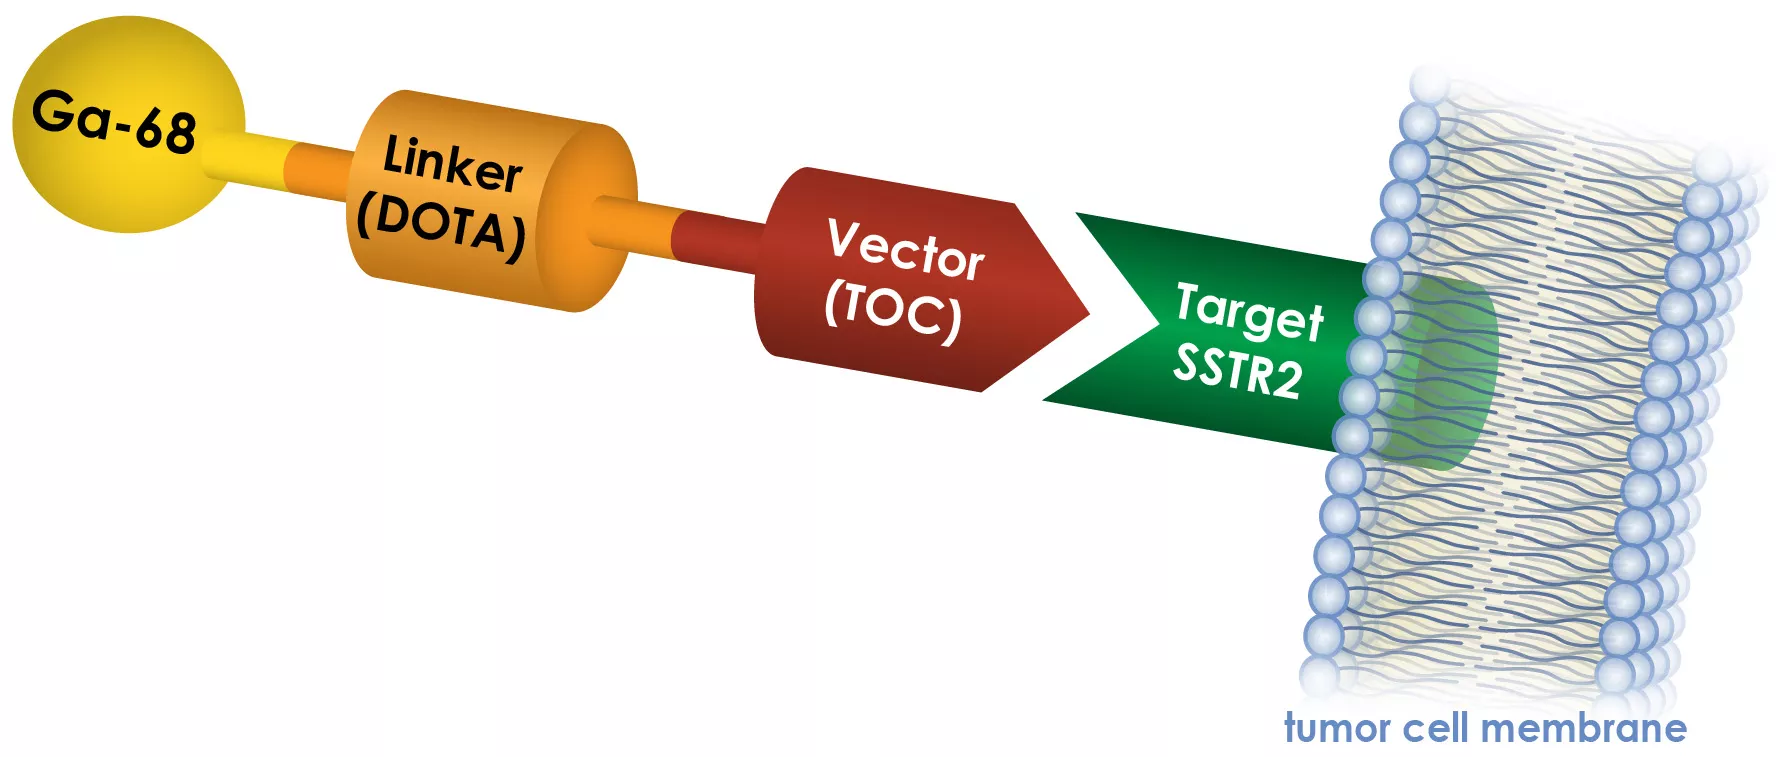 Medical illustration showing how GA-68 DOTATOC targets SSTR2